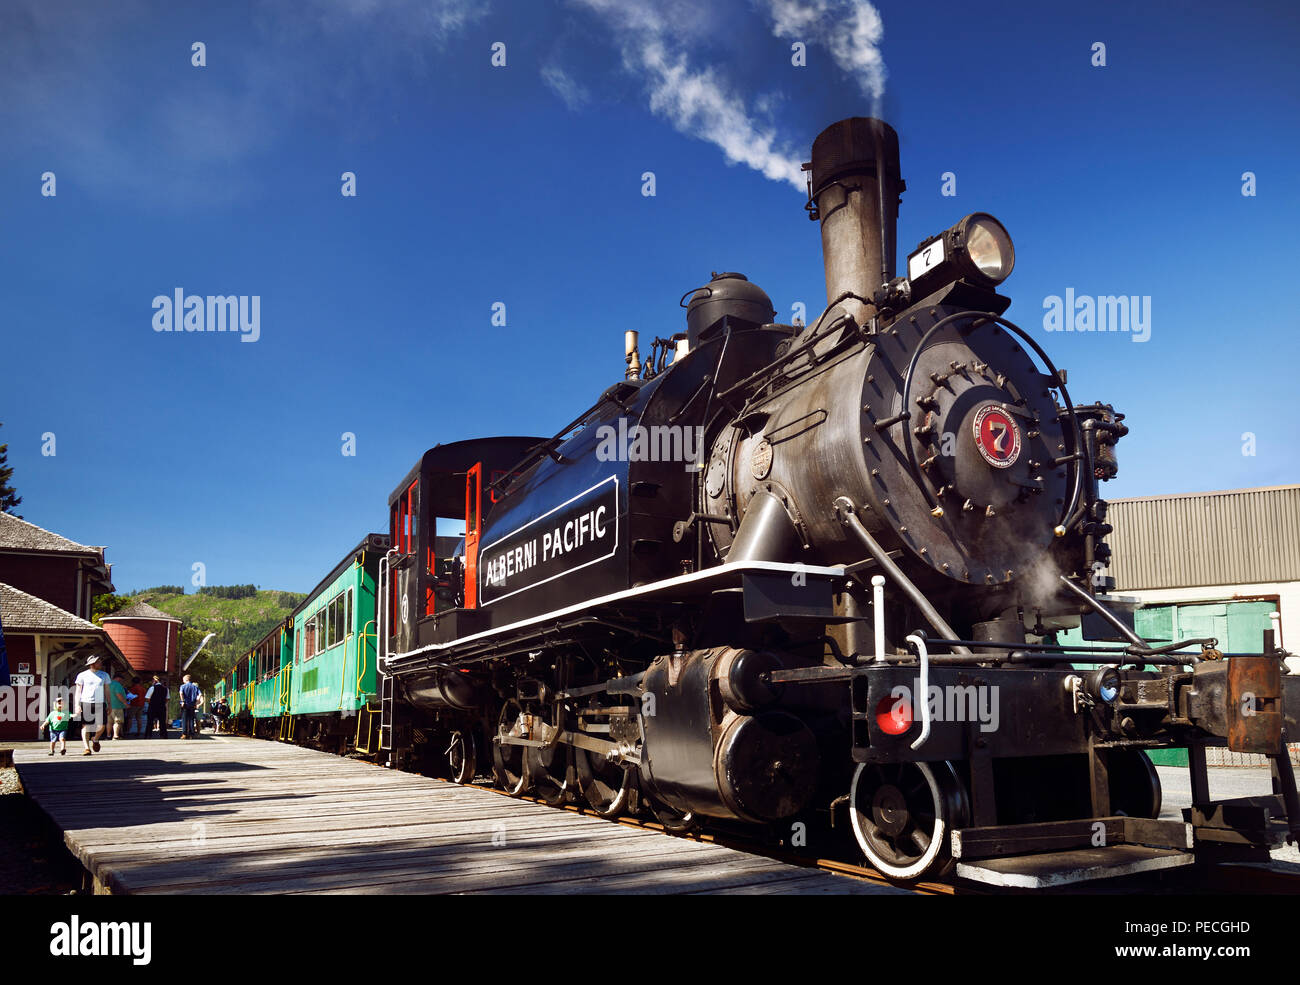 Alberni Pacific Railway locomotive à vapeur historique gare à Port Alberni, Alberni Valley, l'île de Vancouver, Colombie-Britannique, Canada 2018 Banque D'Images